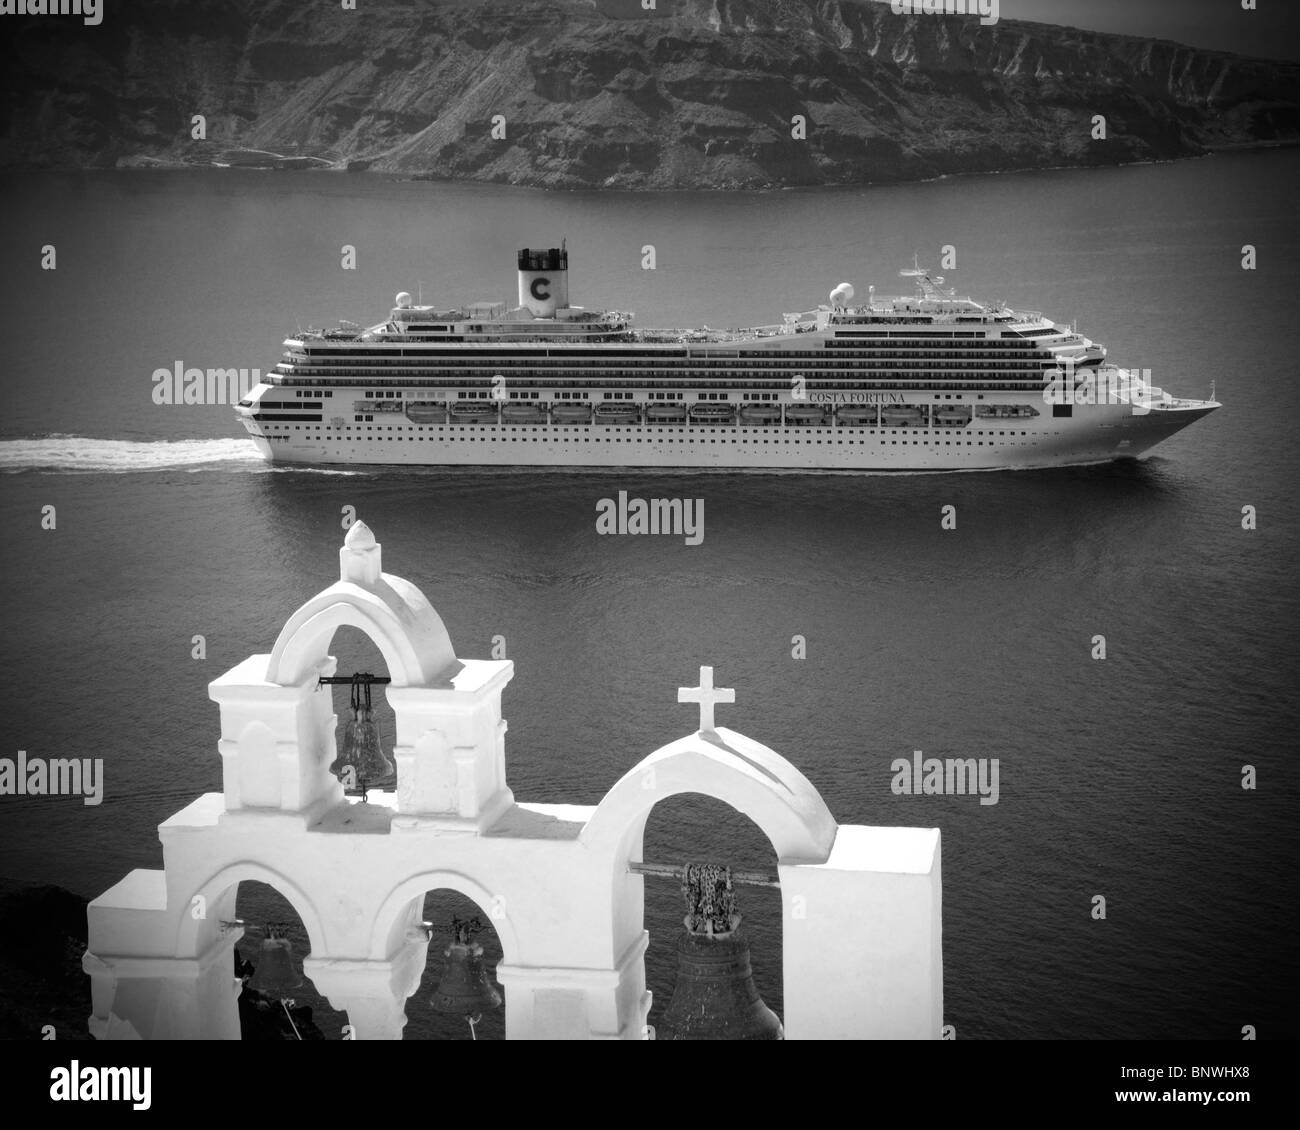 Ein großes Kreuzfahrtschiff ts vorbei unterhalb der Stadt Oia beim verlassen von Insel Santorini, Griechenland. Stockfoto